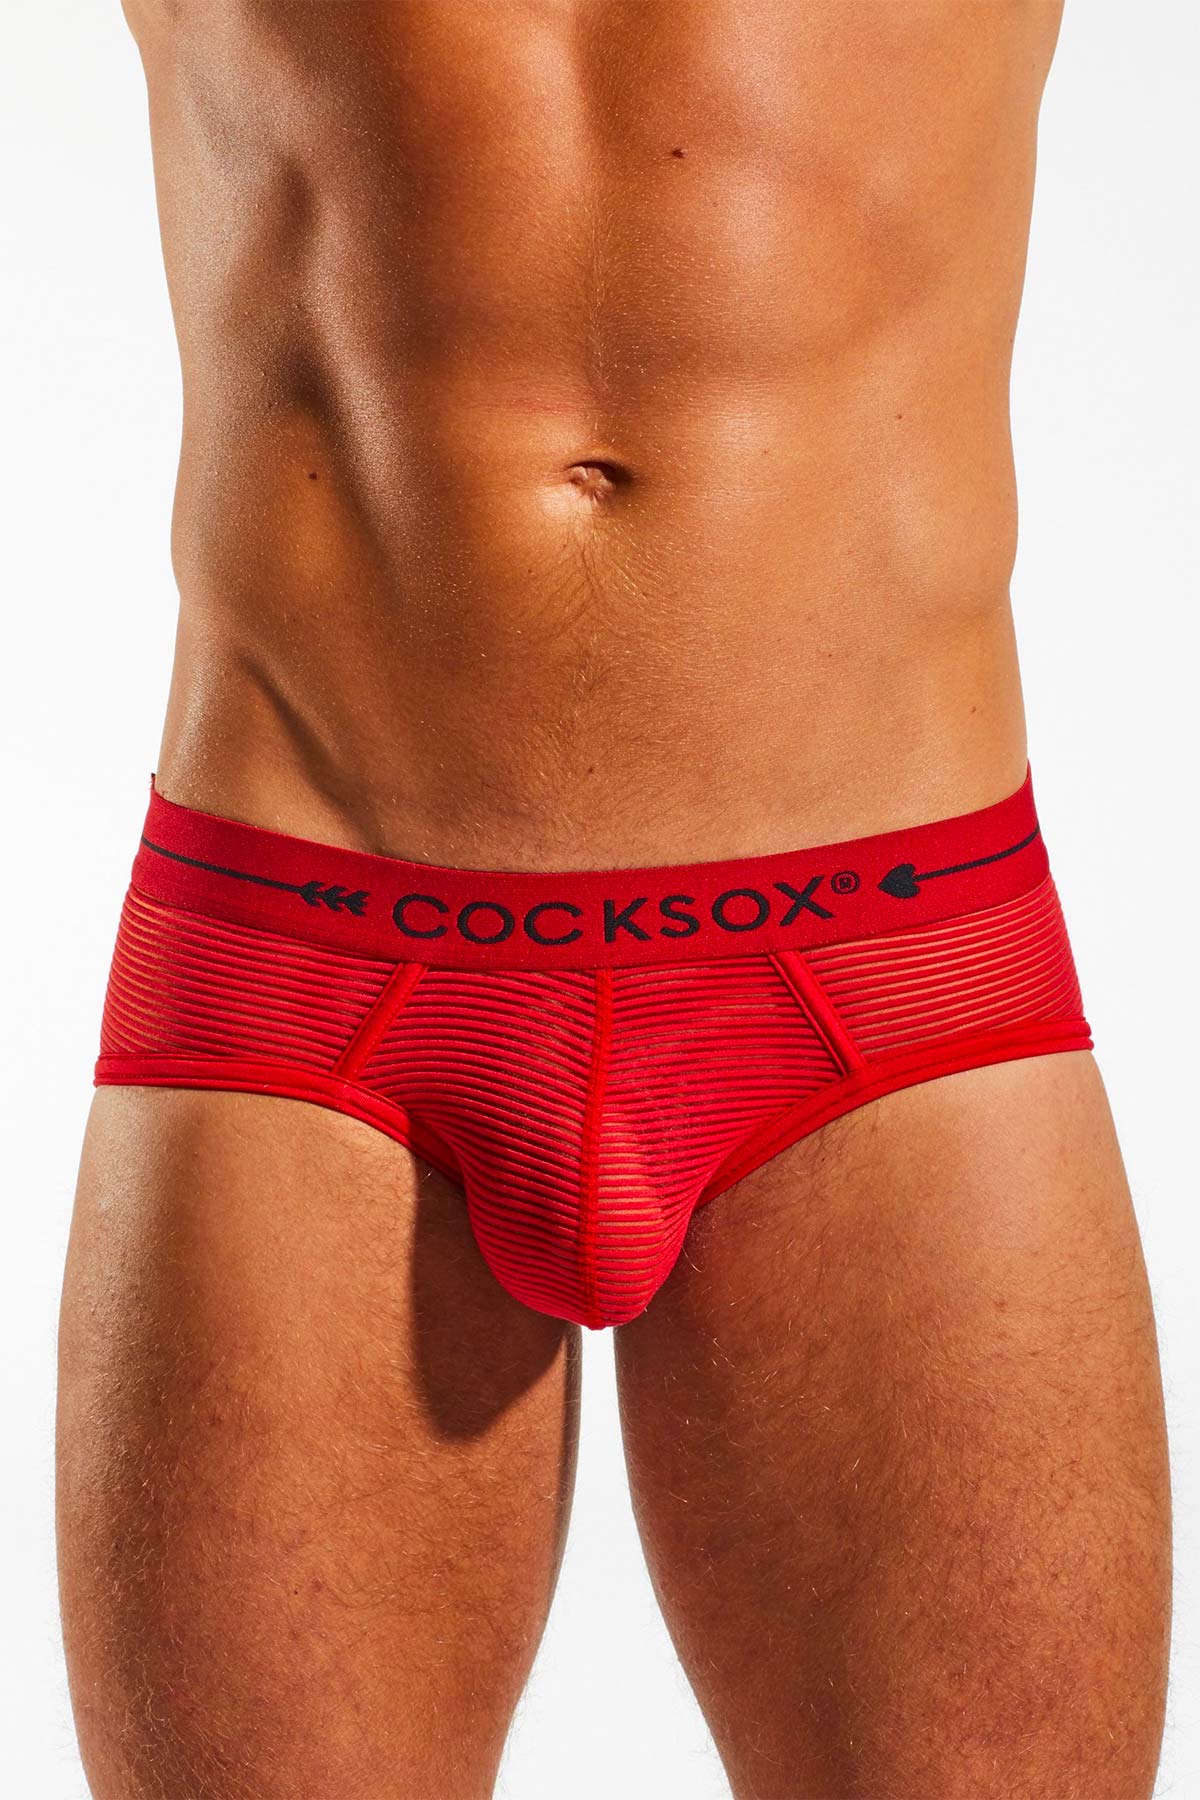 Men's Sexy Underwear  Men's Underwear Online & Lingerie I Cocksox –  Cocksox®